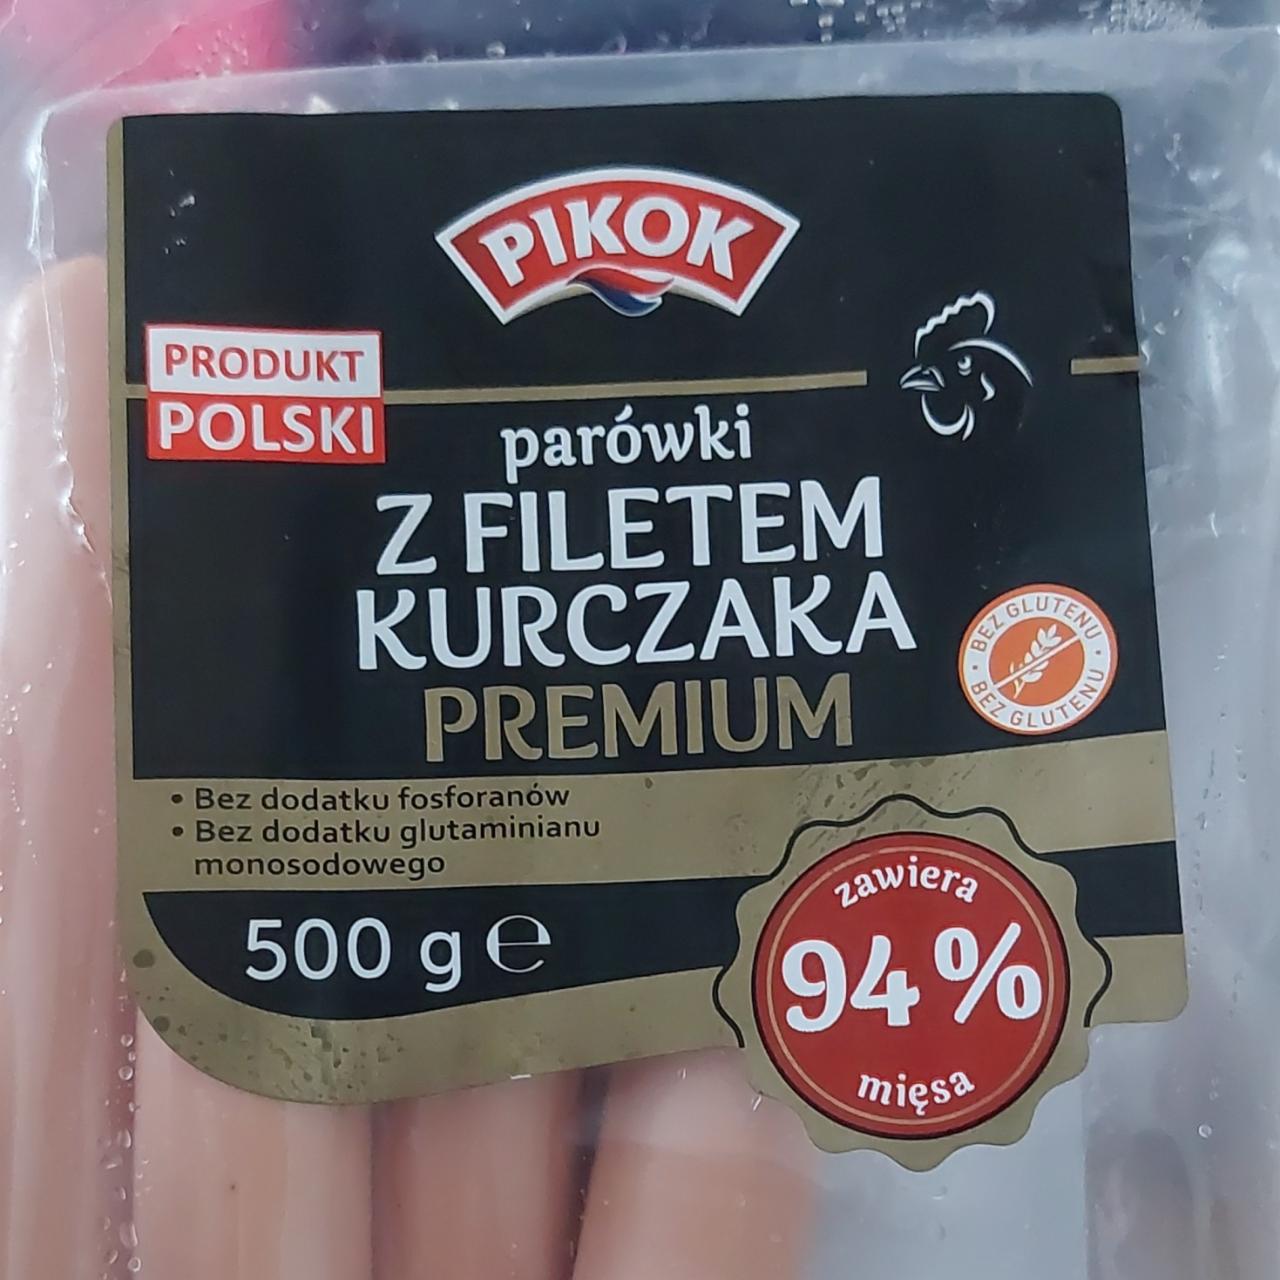 Zdjęcia - Parówki z filetem kurczaka Premium Pikok